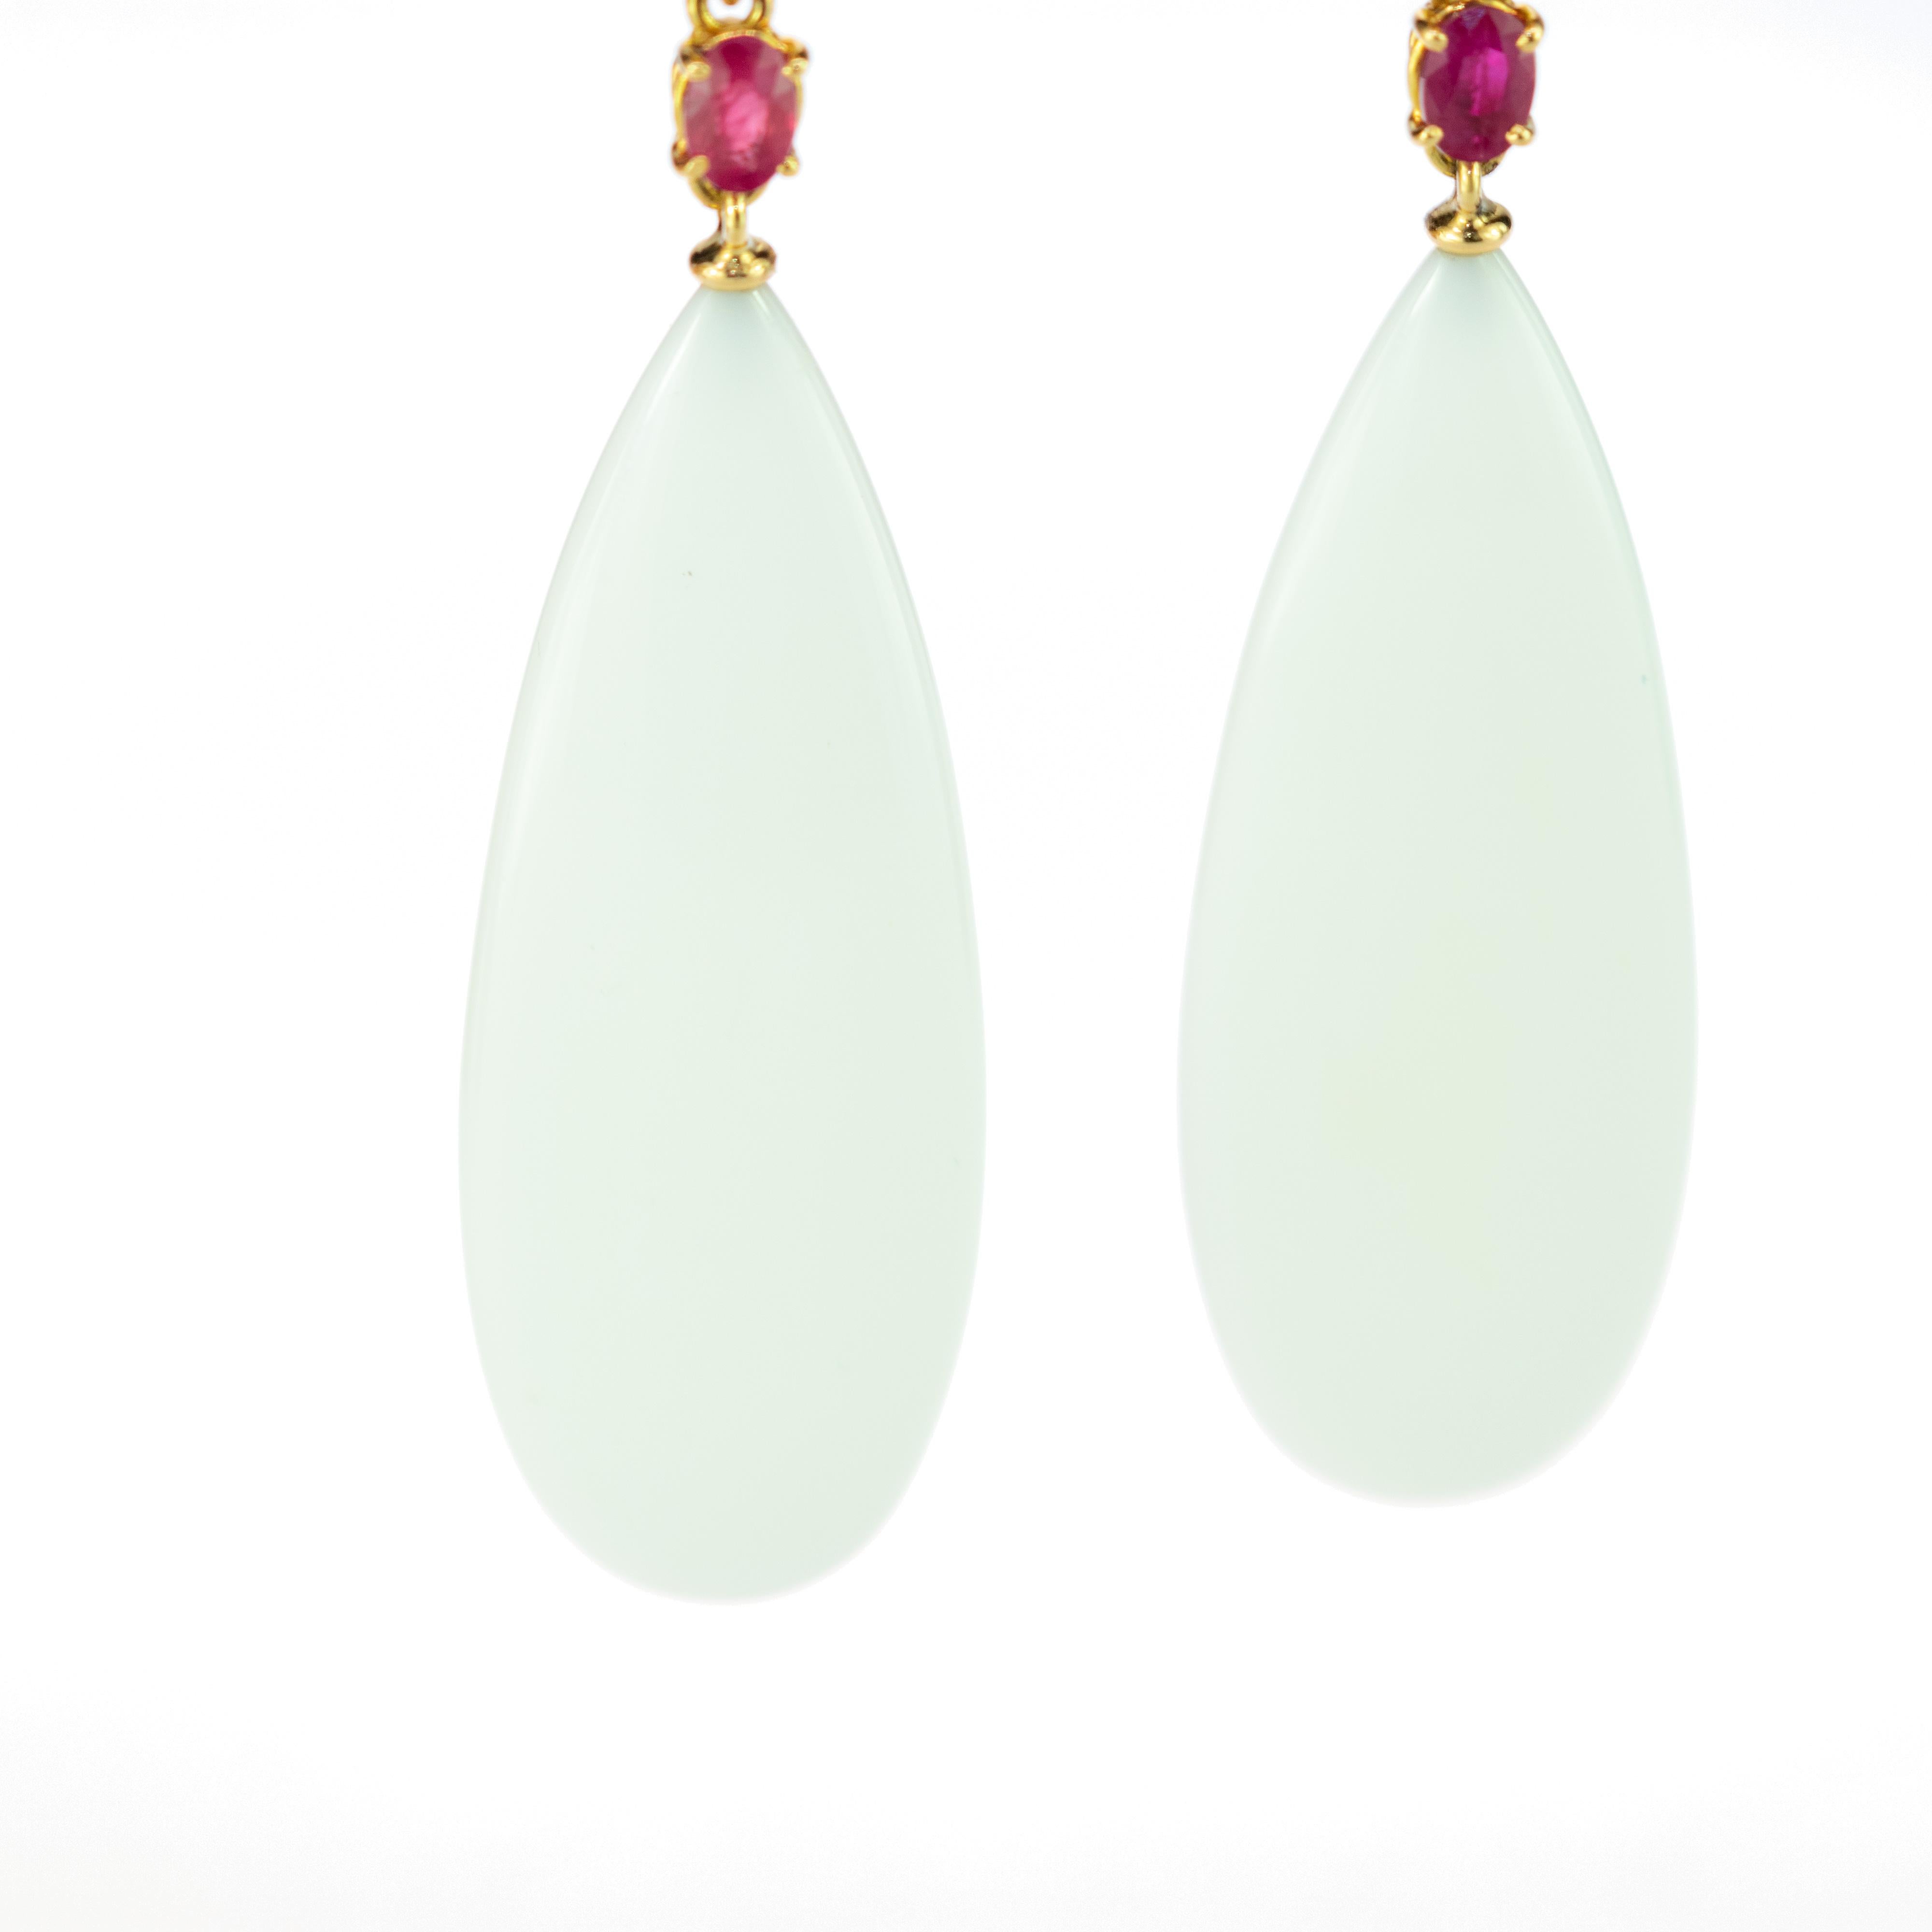 White Agate Ruby 18 Karat Yellow Gold Chandelier Tear Drop Long Art Earrings For Sale 2